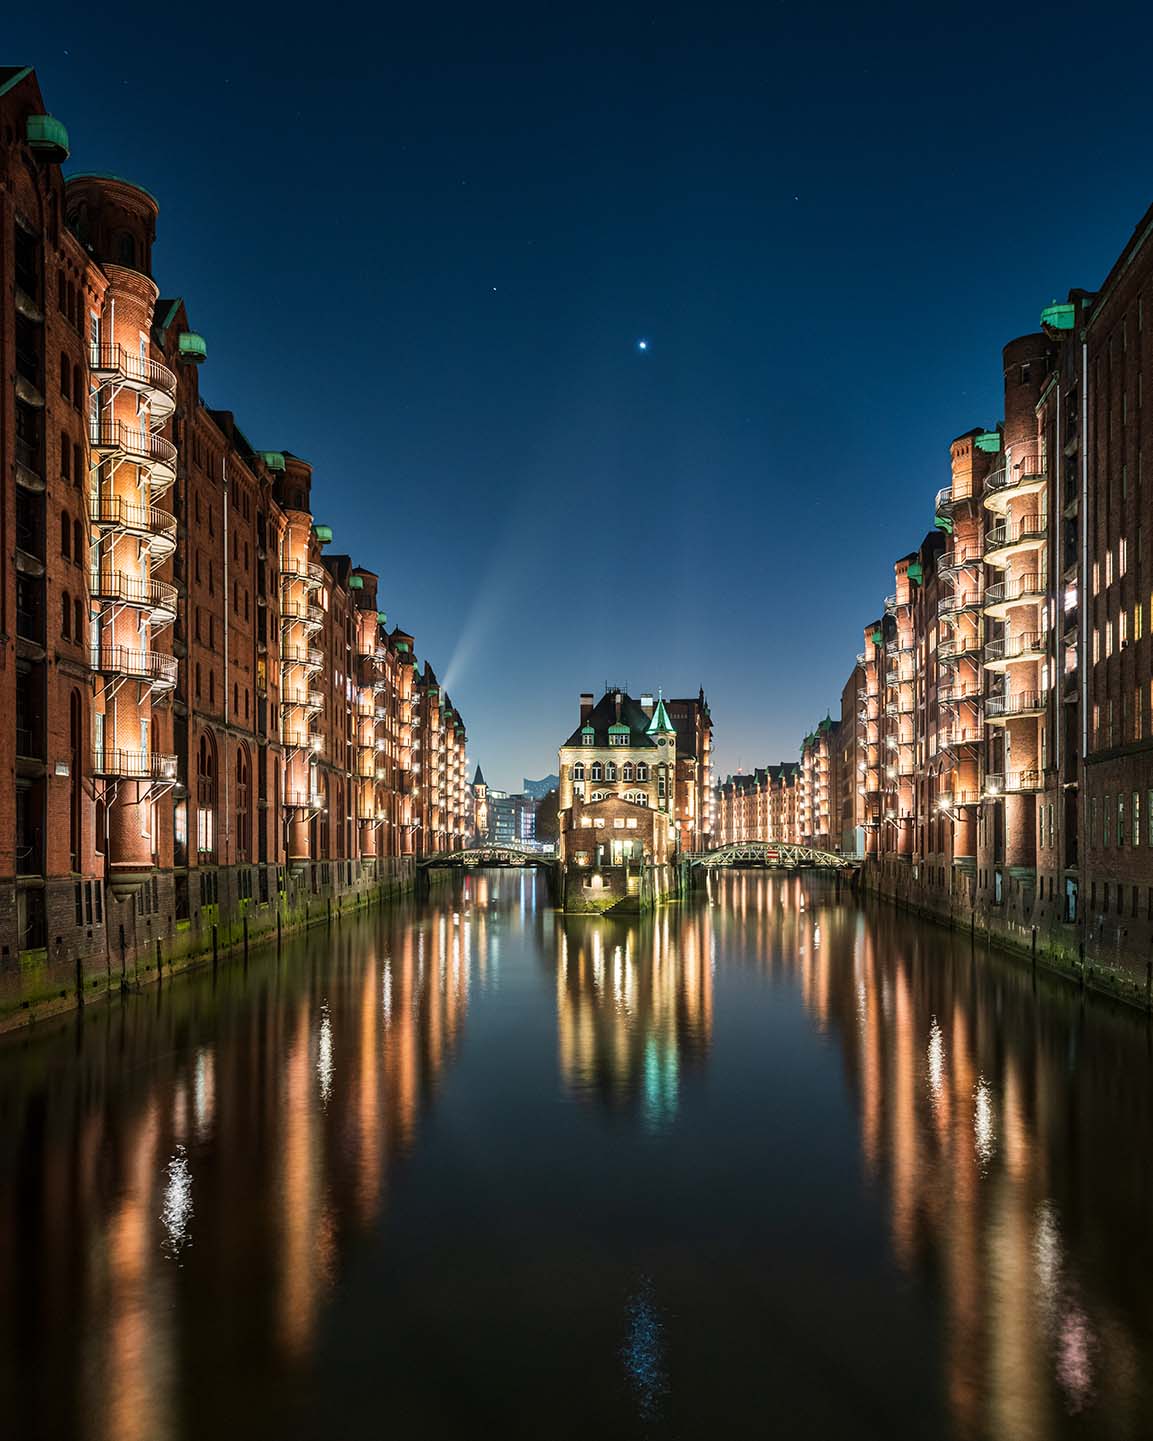 Kanal in der Hamburger Speicherstadt im abendlichen Licht mit Stern am Himmel